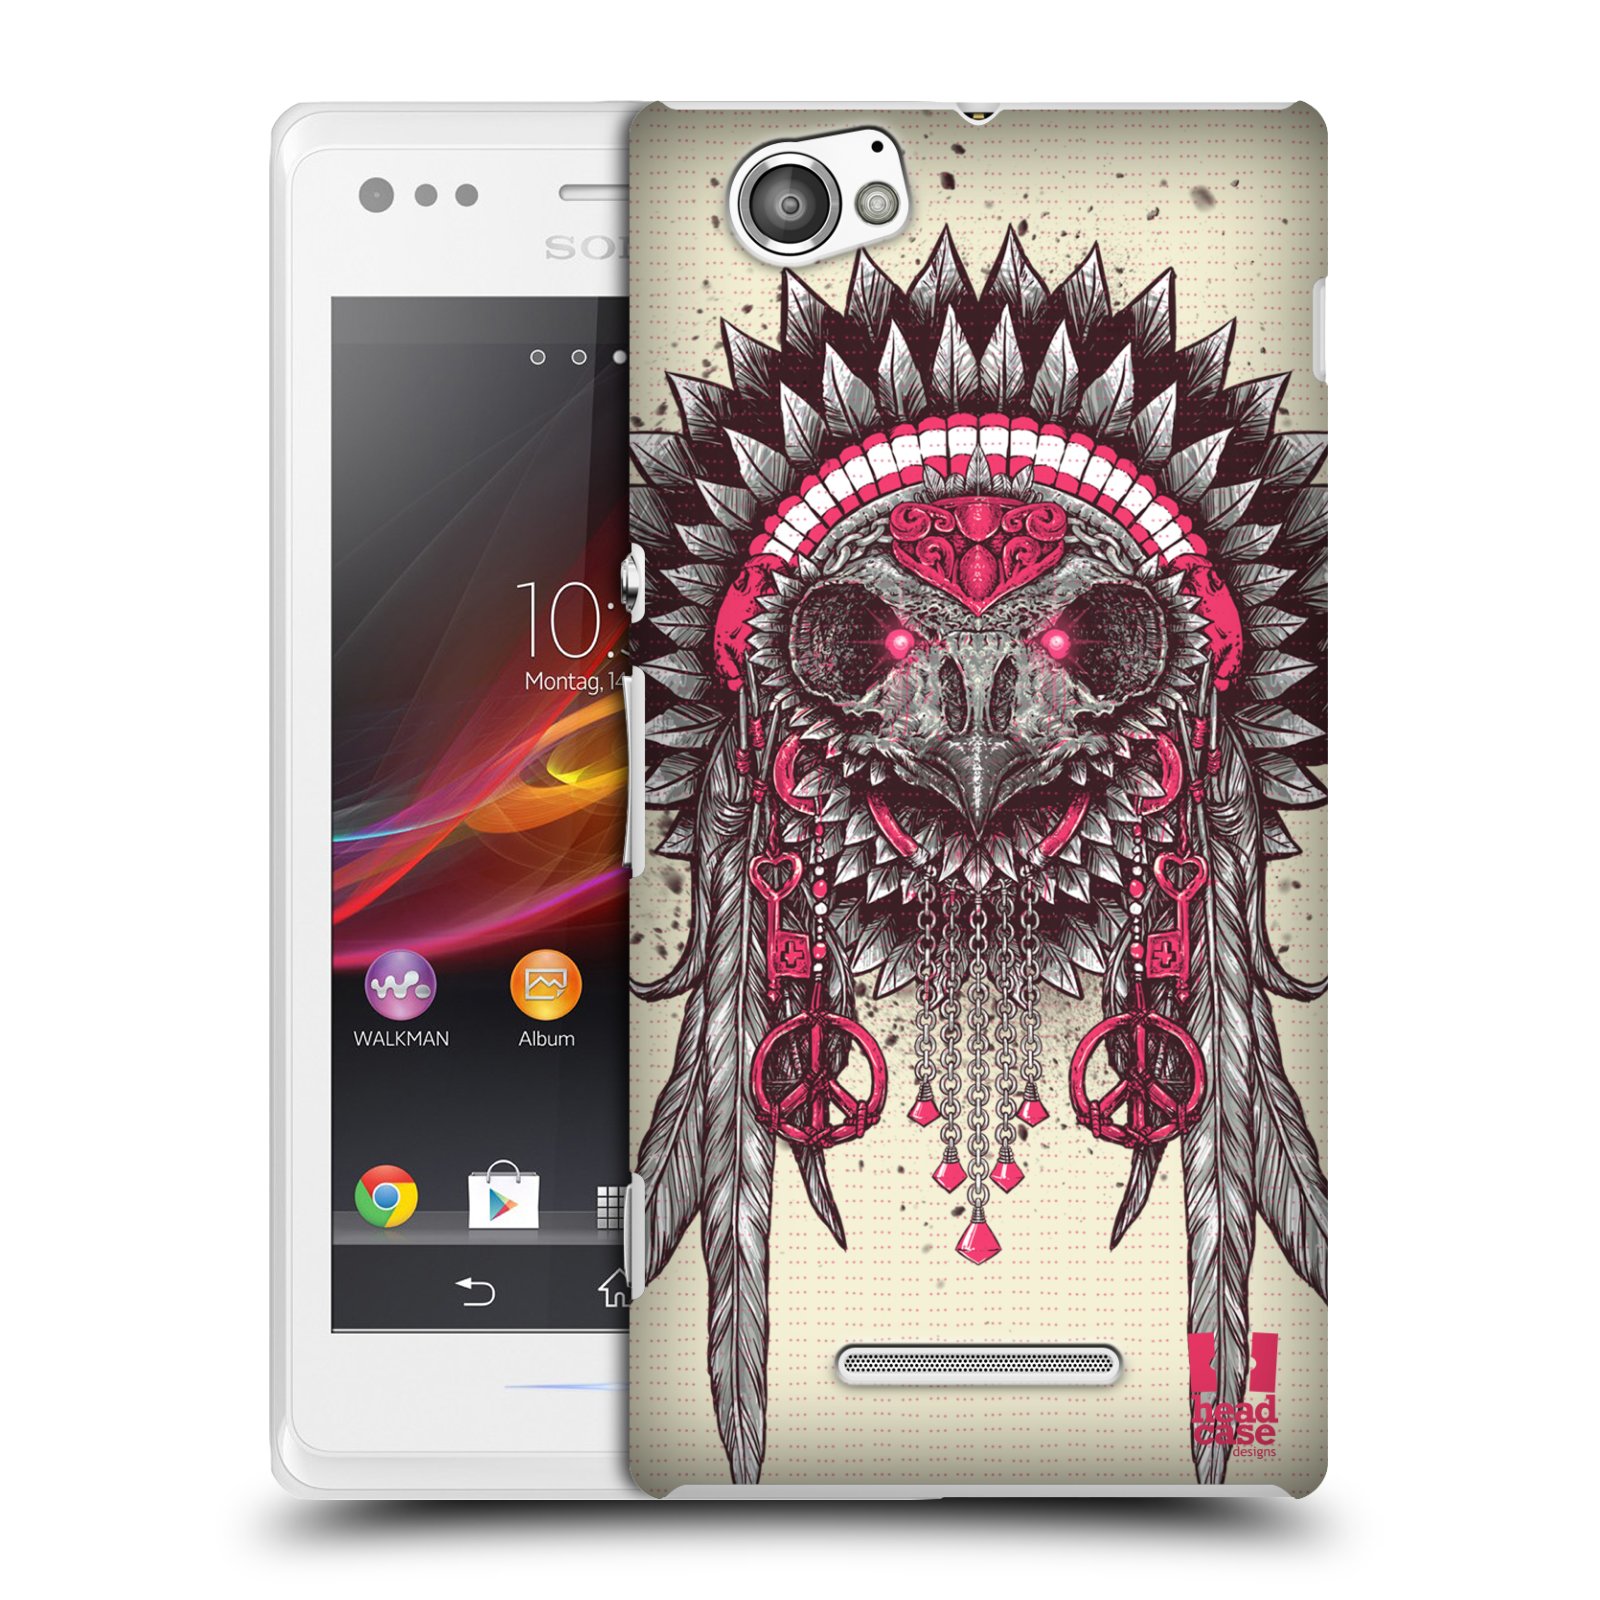 HEAD CASE plastový obal na mobil Sony Xperia M vzor Etnické sovy růžová a šedá